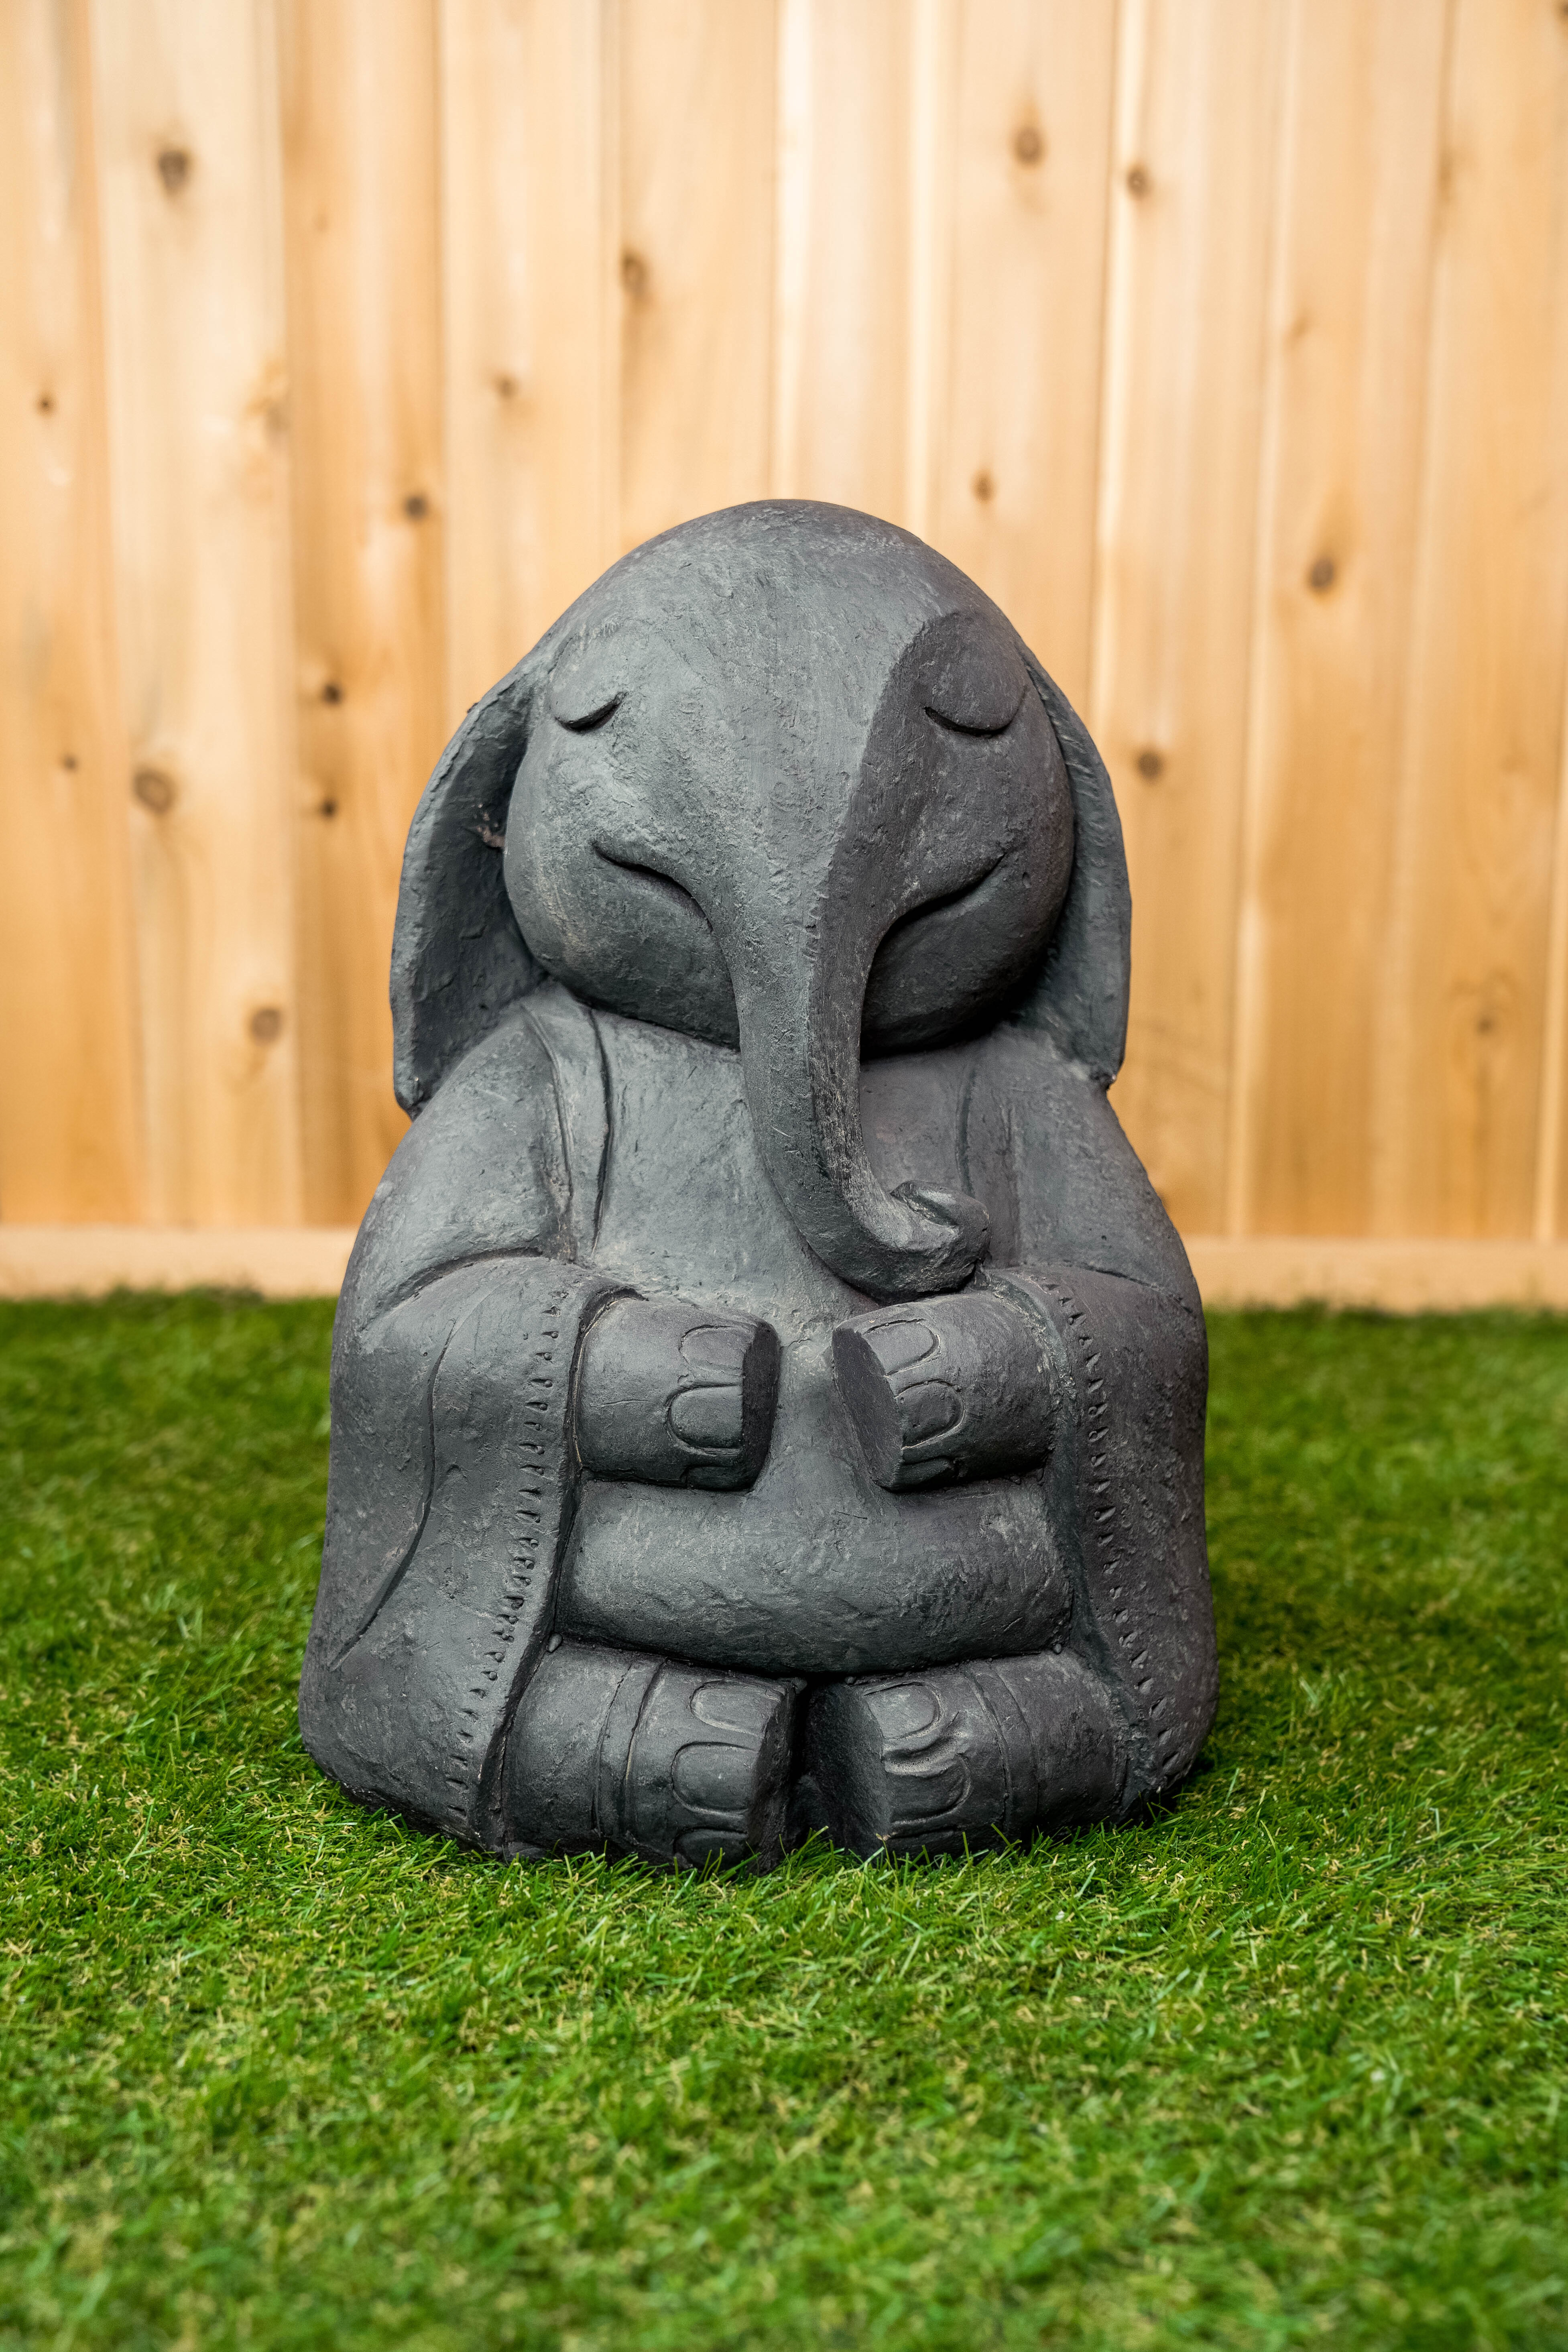 Hi-Line Gift Ltd. Statue bébé éléphant et Commentaires - Wayfair